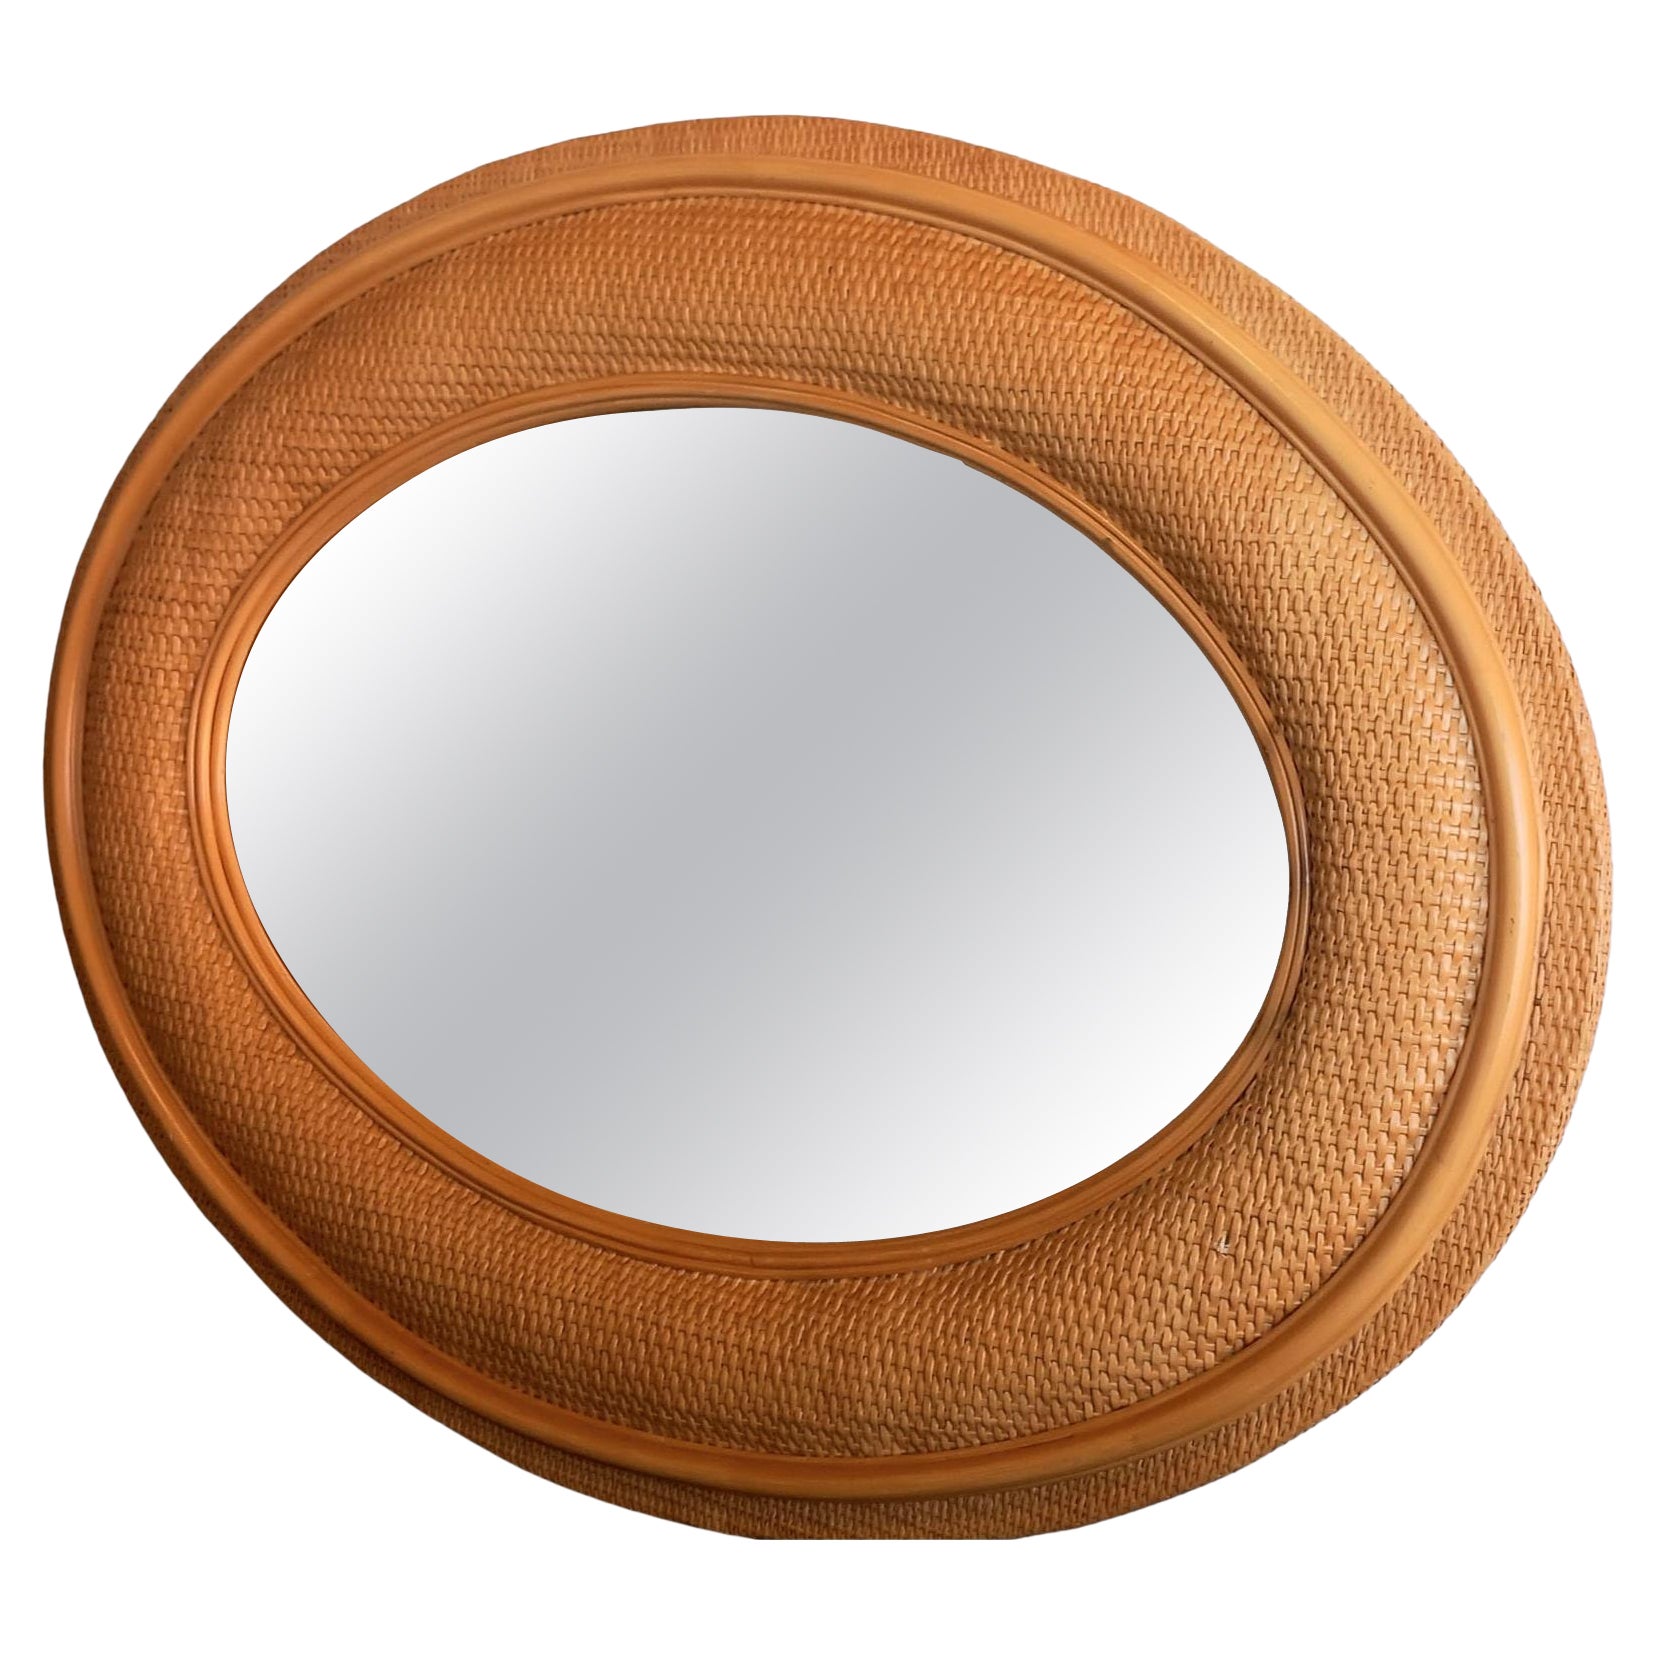 Ausgezeichnete Qualität 
Nicht üblich

Große ovale Rattan-Spiegel
  kann senkrecht oder waagerecht angebracht werden
  Wir haben diese ungewöhnlich großen Spiegel
  Es sind beeindruckend große Spiegel.
Sie sind sorgfältig gefertigt und haben eine